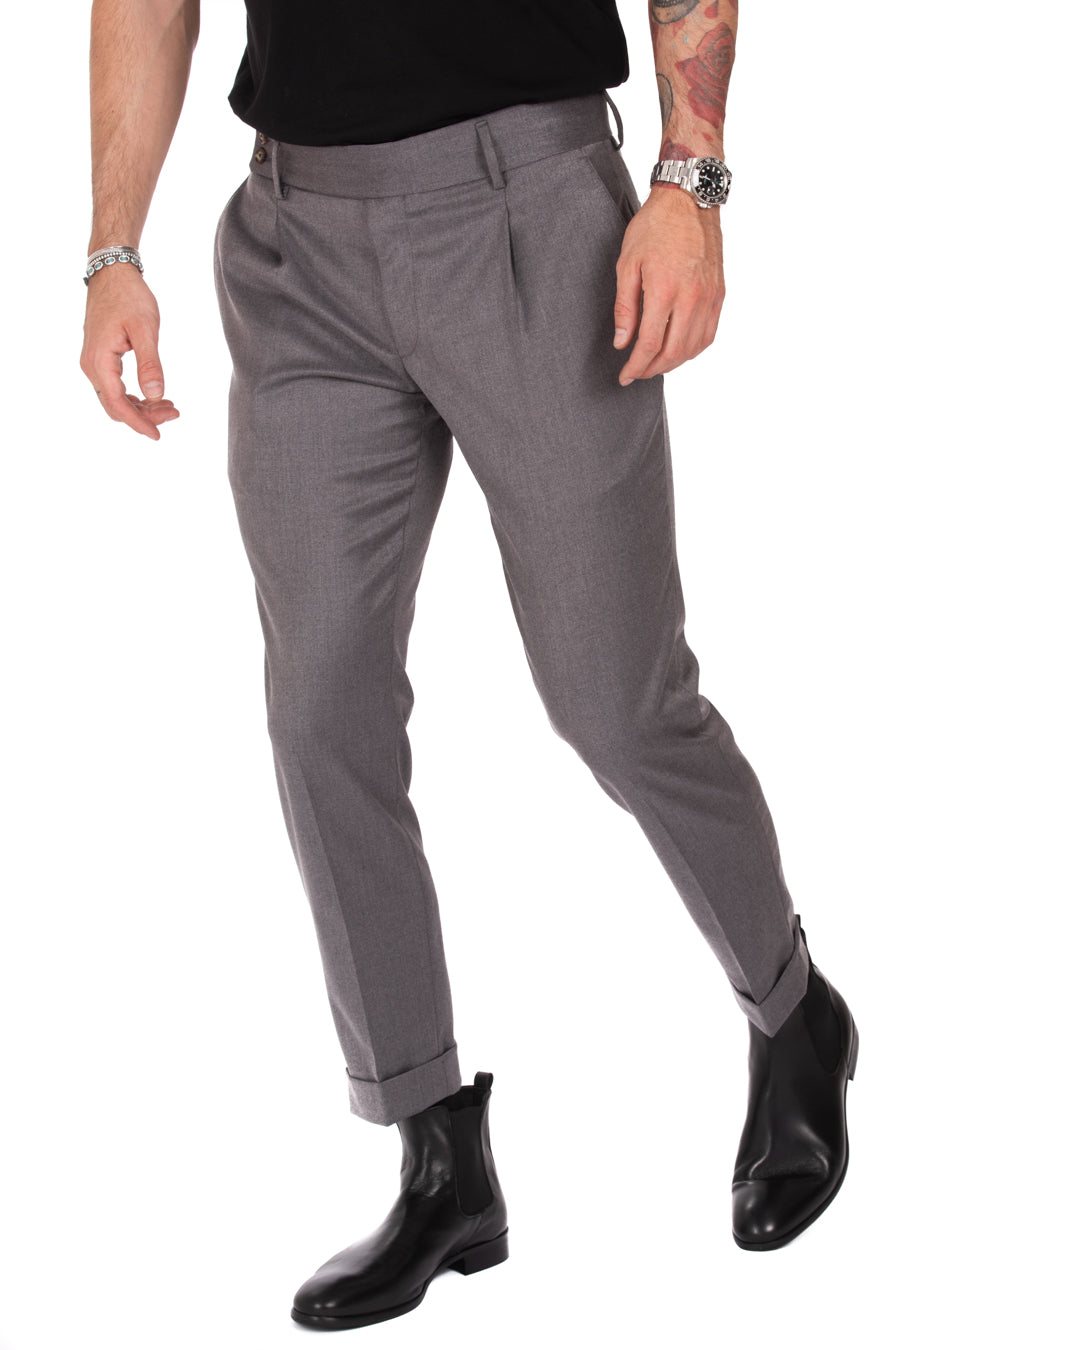 Italian - pantalone vita alta grigio